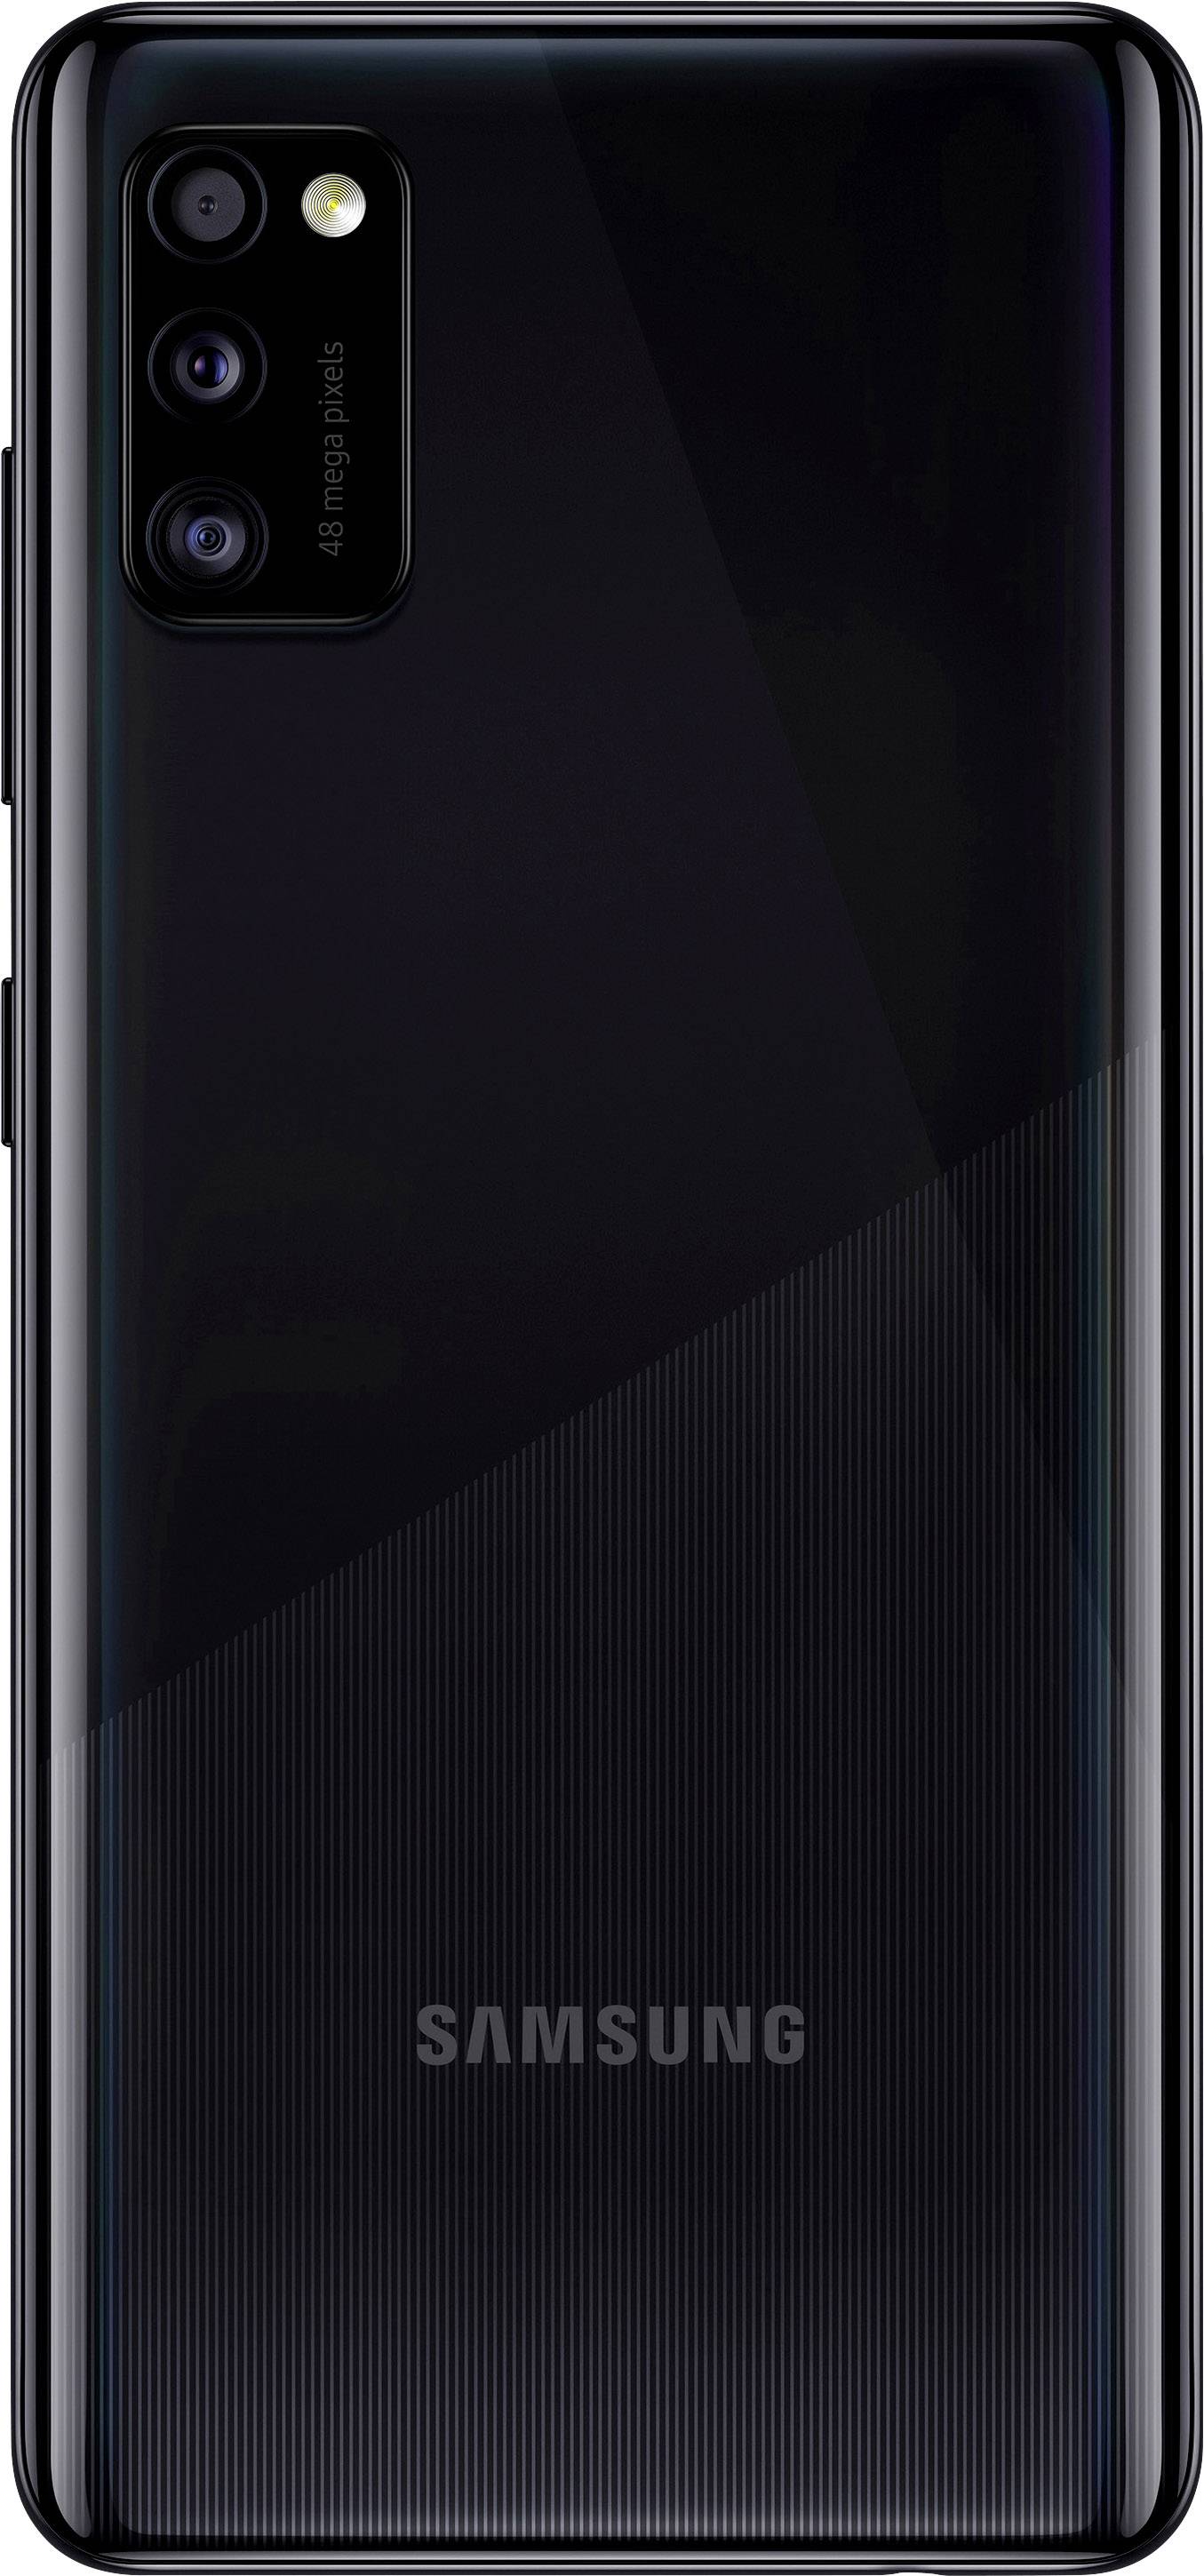 交換送料無料 Galaxy A41 ブラック 64 GB au - スマートフォン・携帯電話